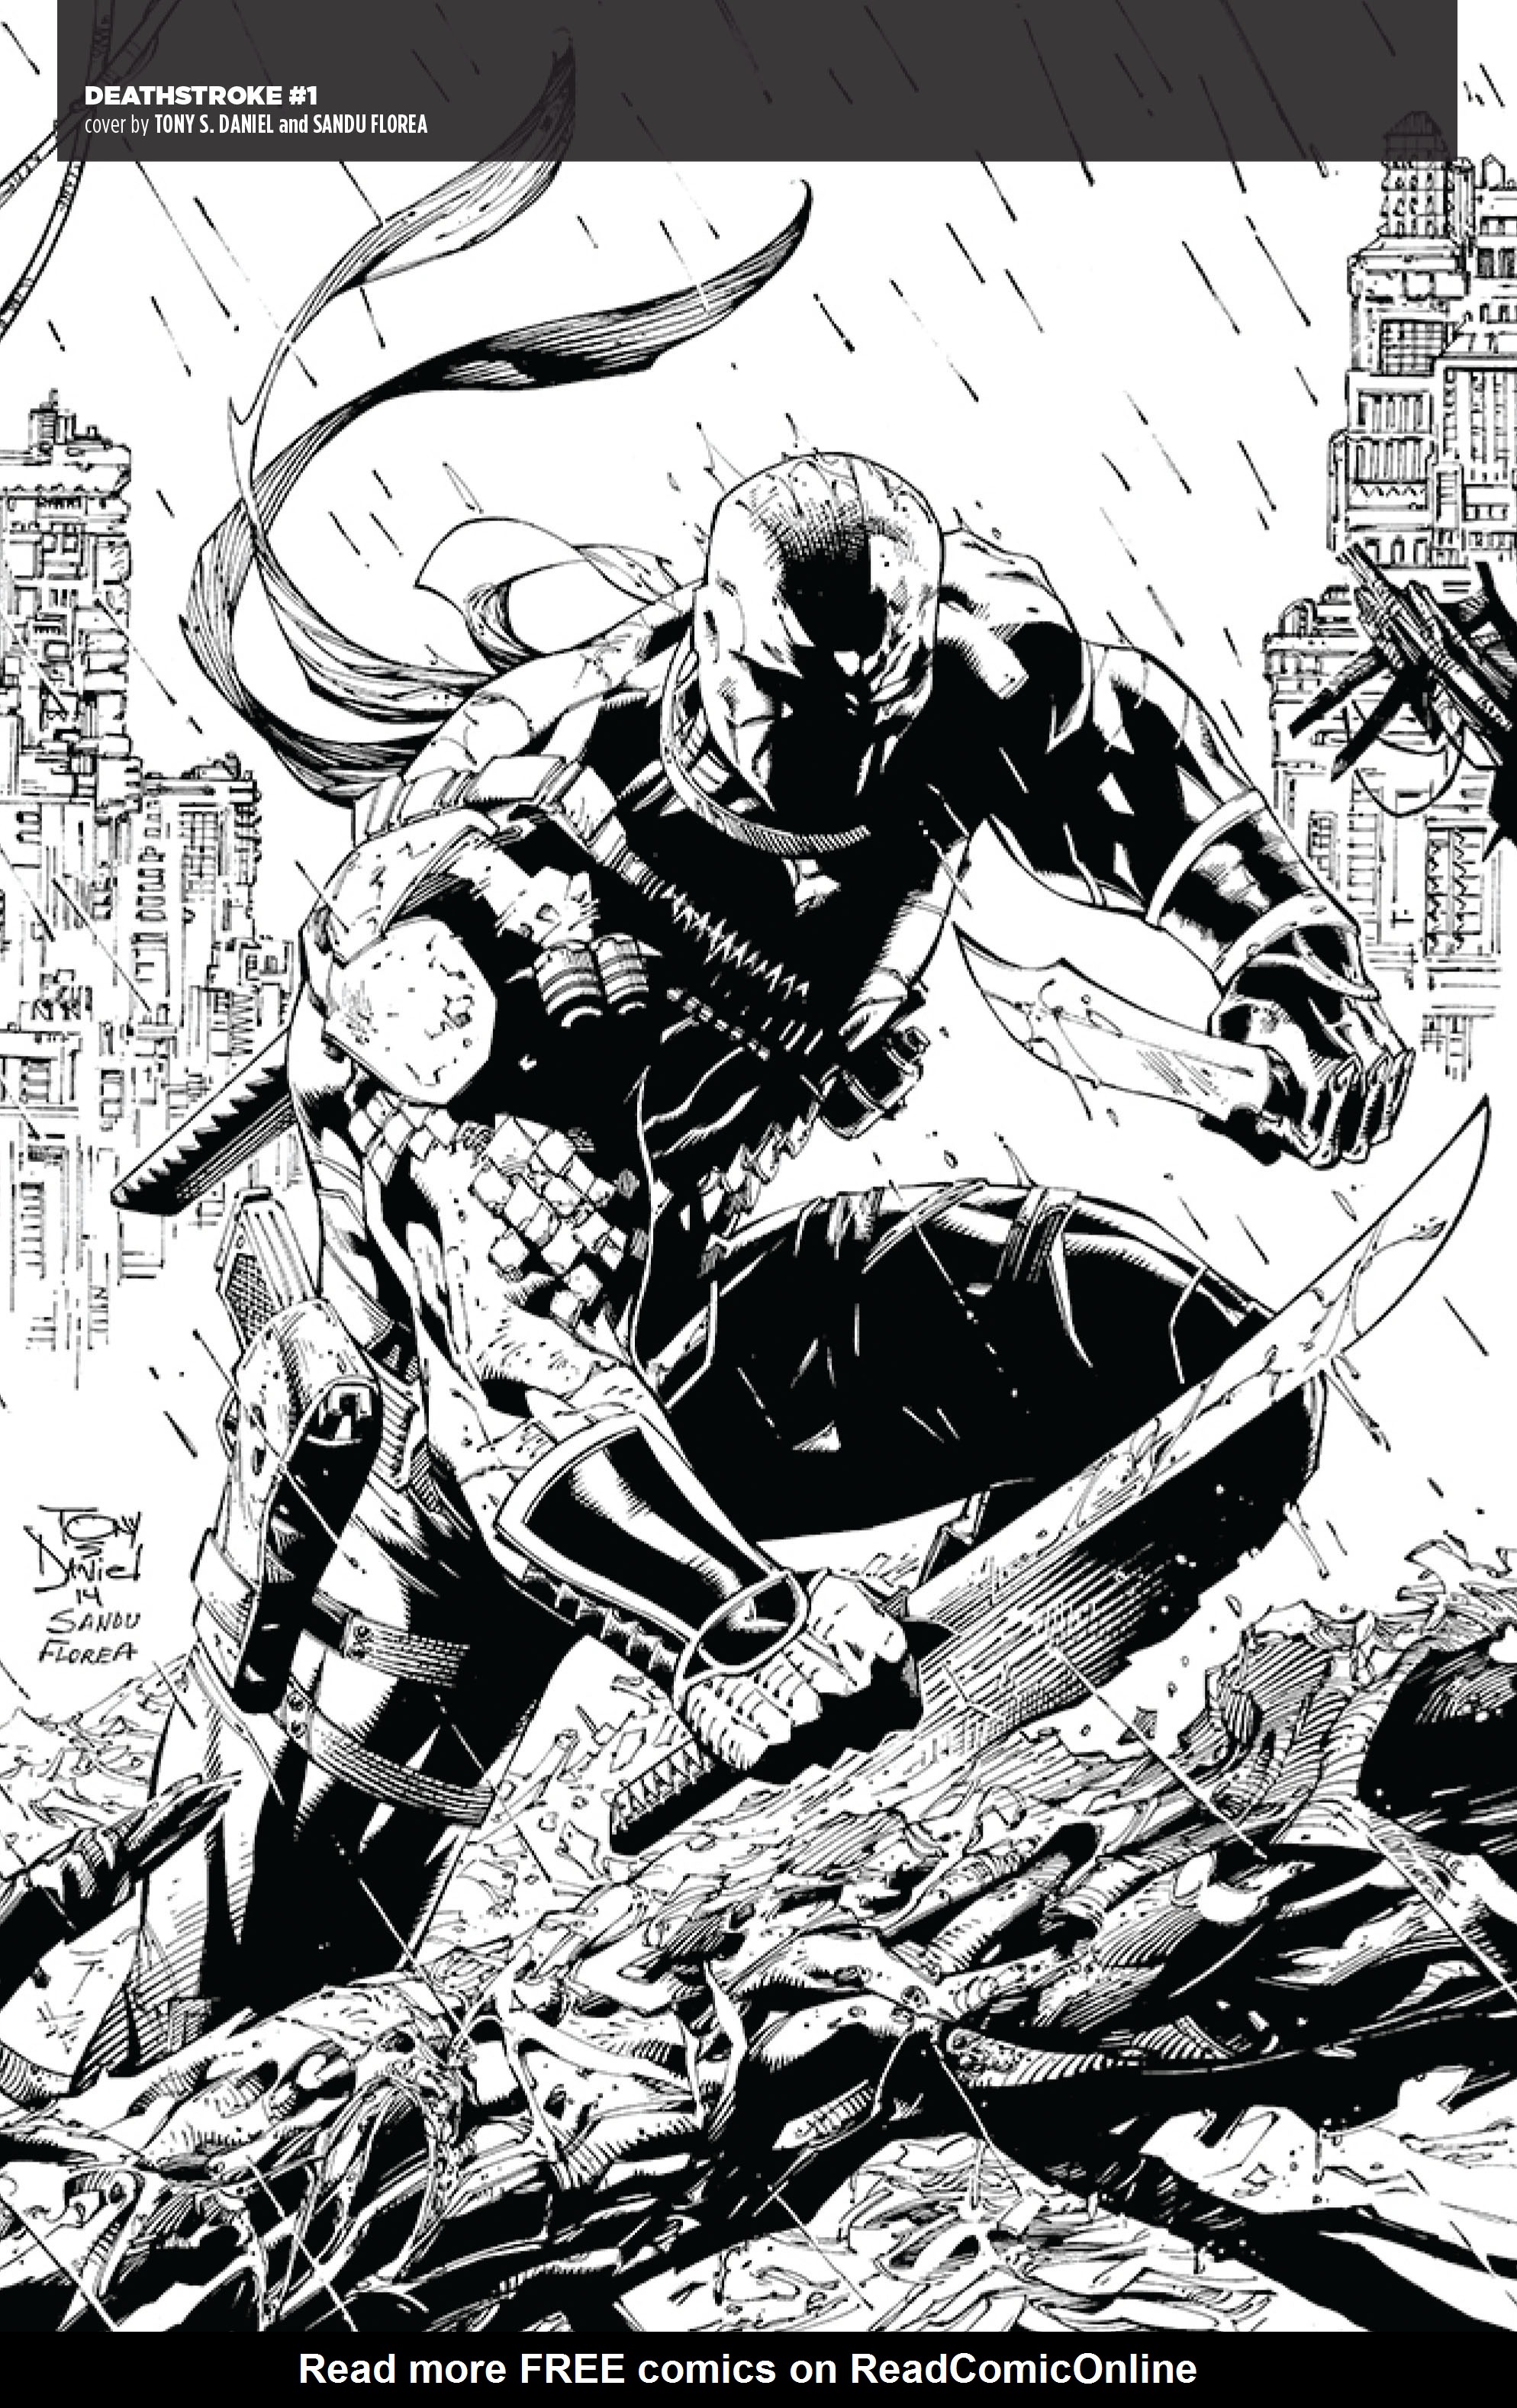 Read online Deathstroke: Gods of War comic -  Issue # TPB - 120